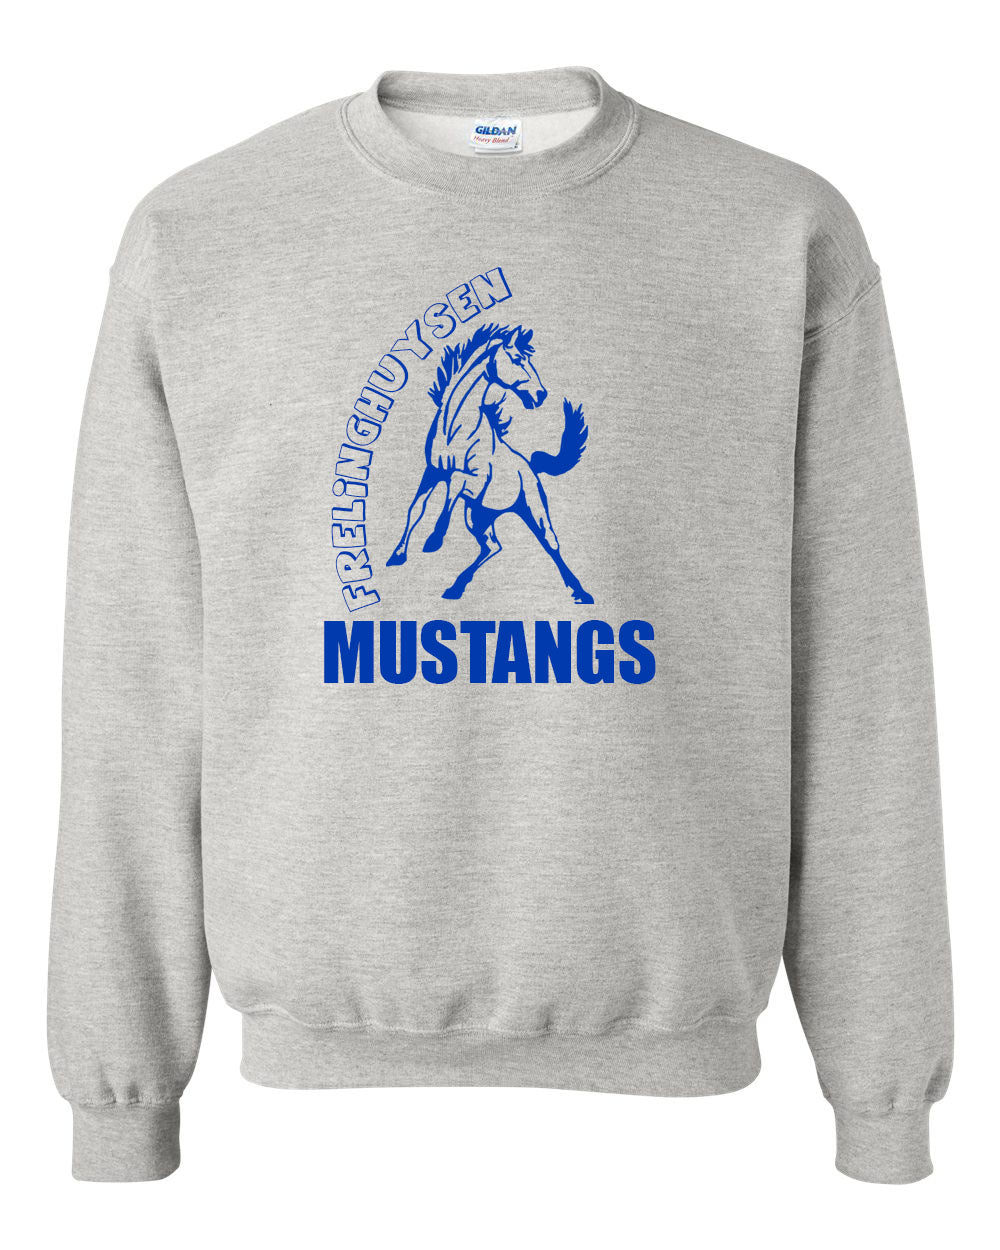 Mustangs design 4 non hooded sweatshirt